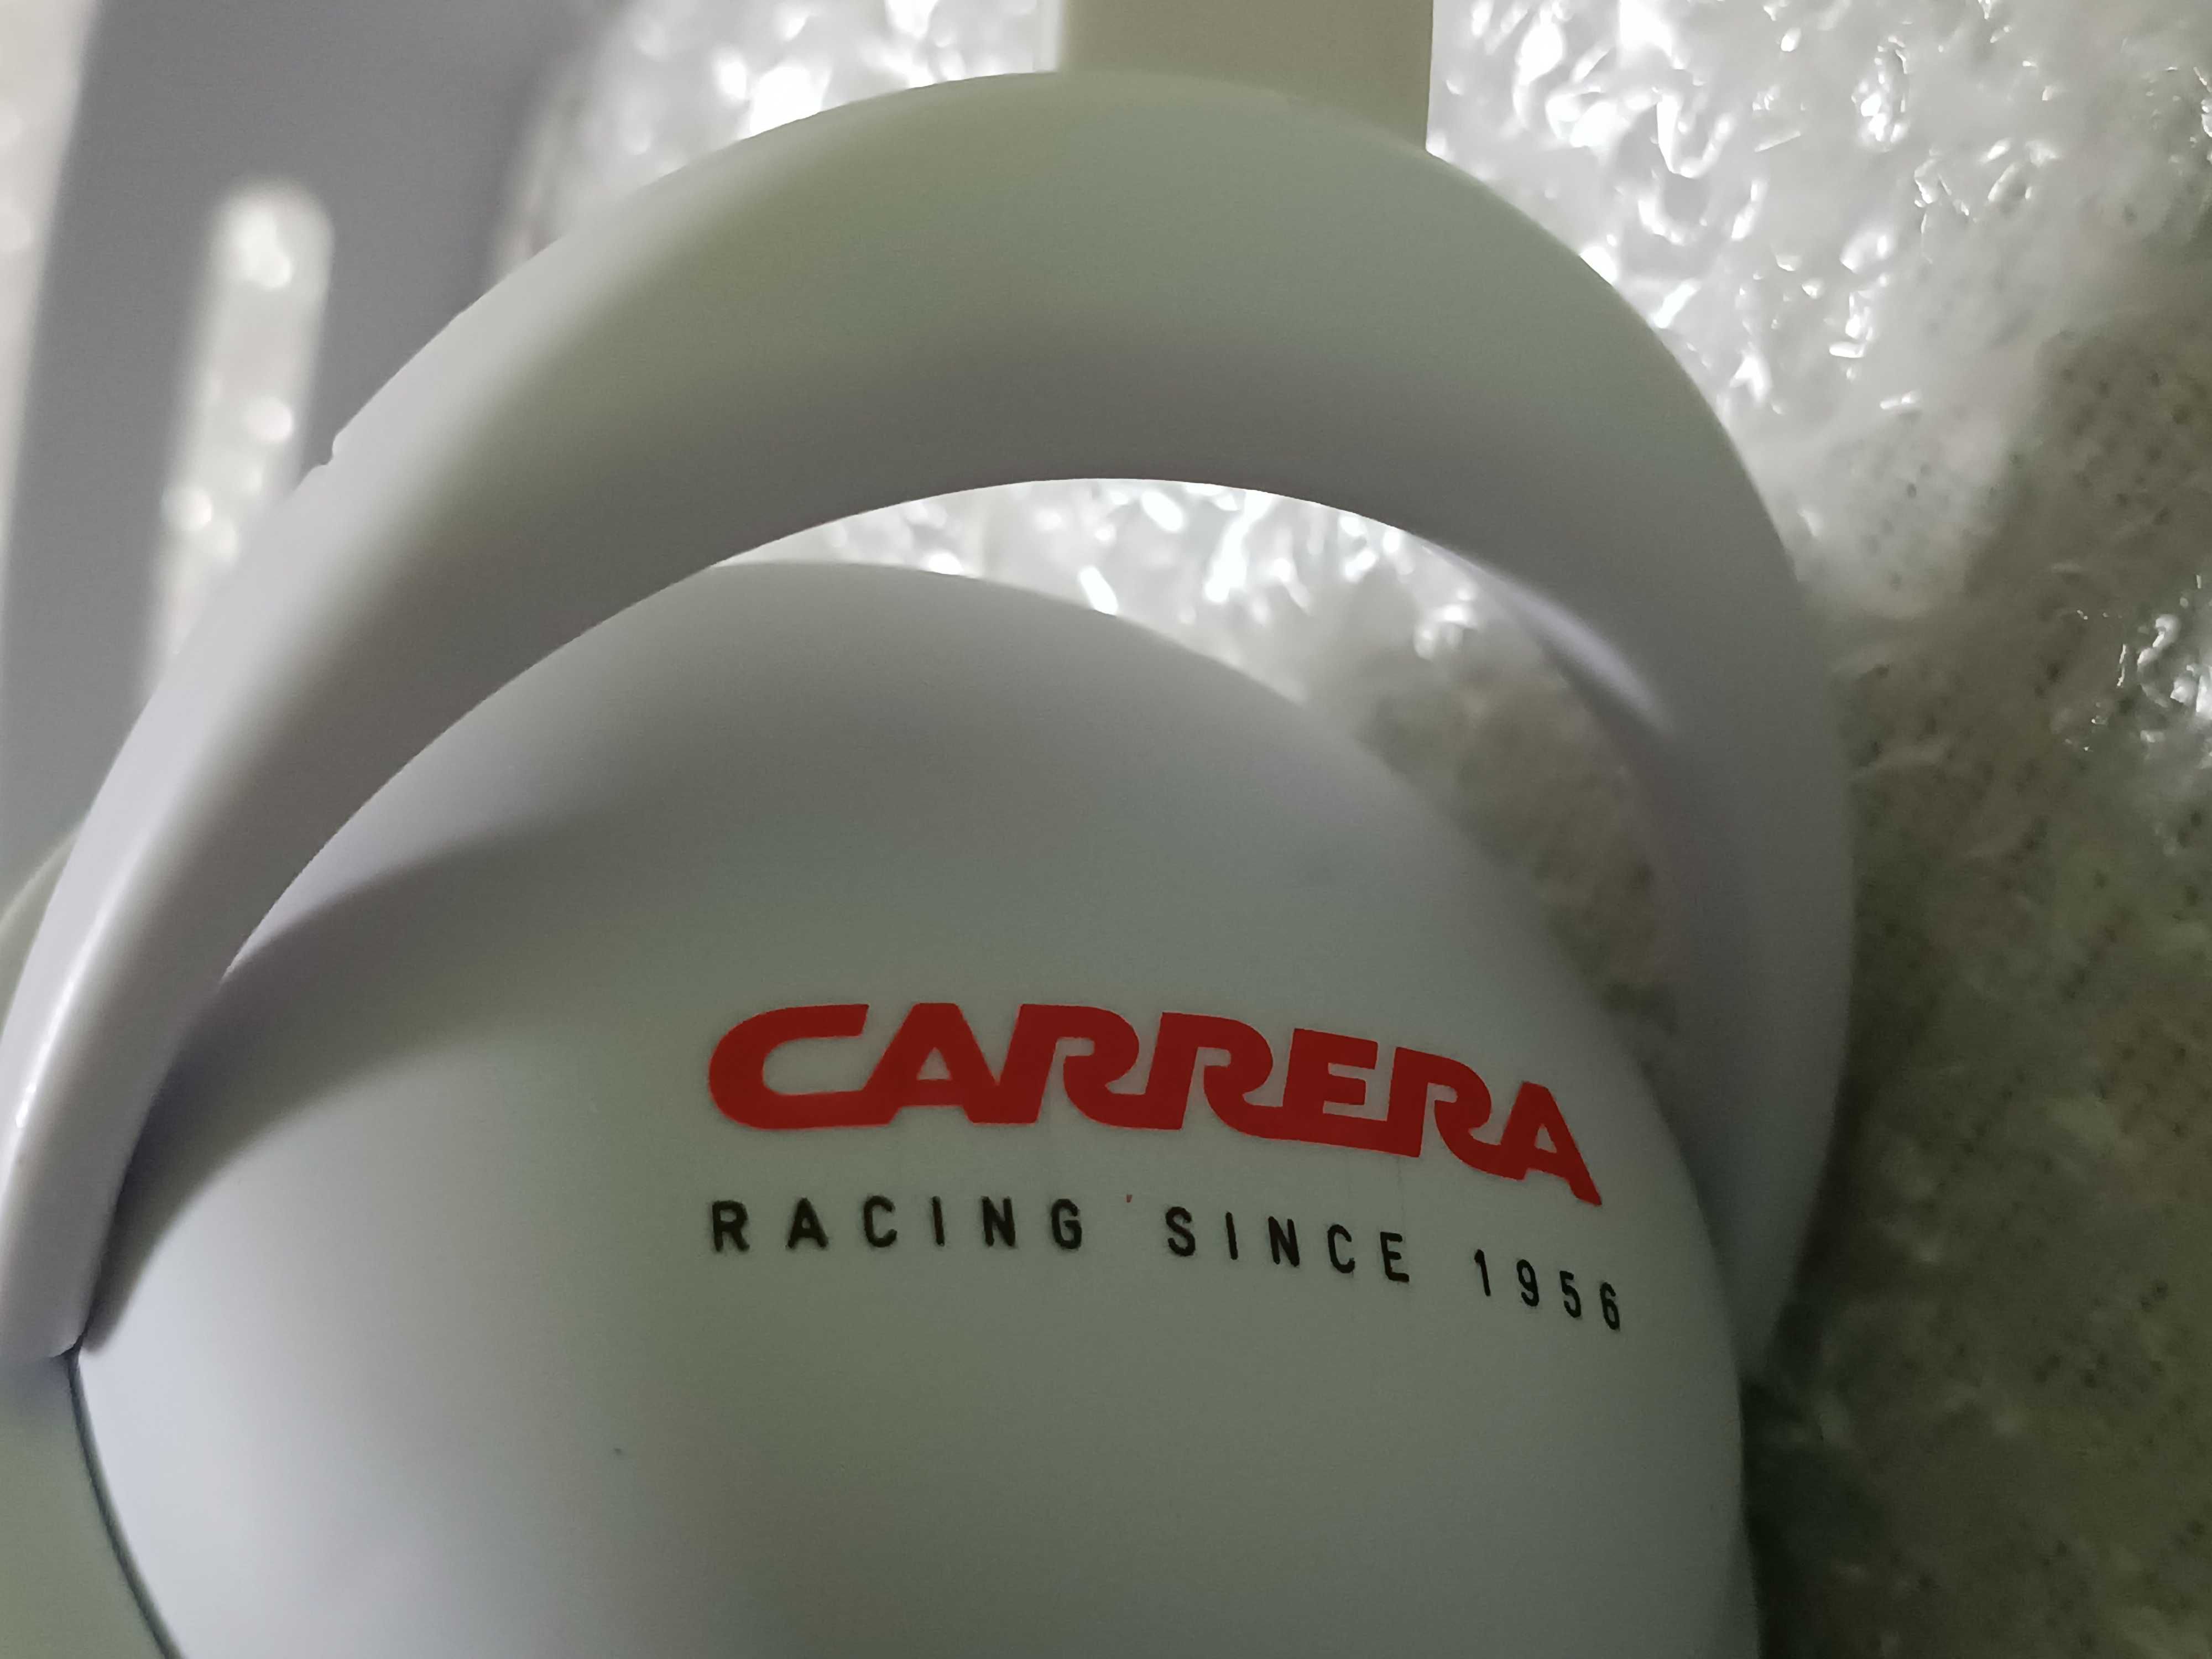 NOWE | Słuchawki CARRERA Racing Since 1956 | BIAŁE